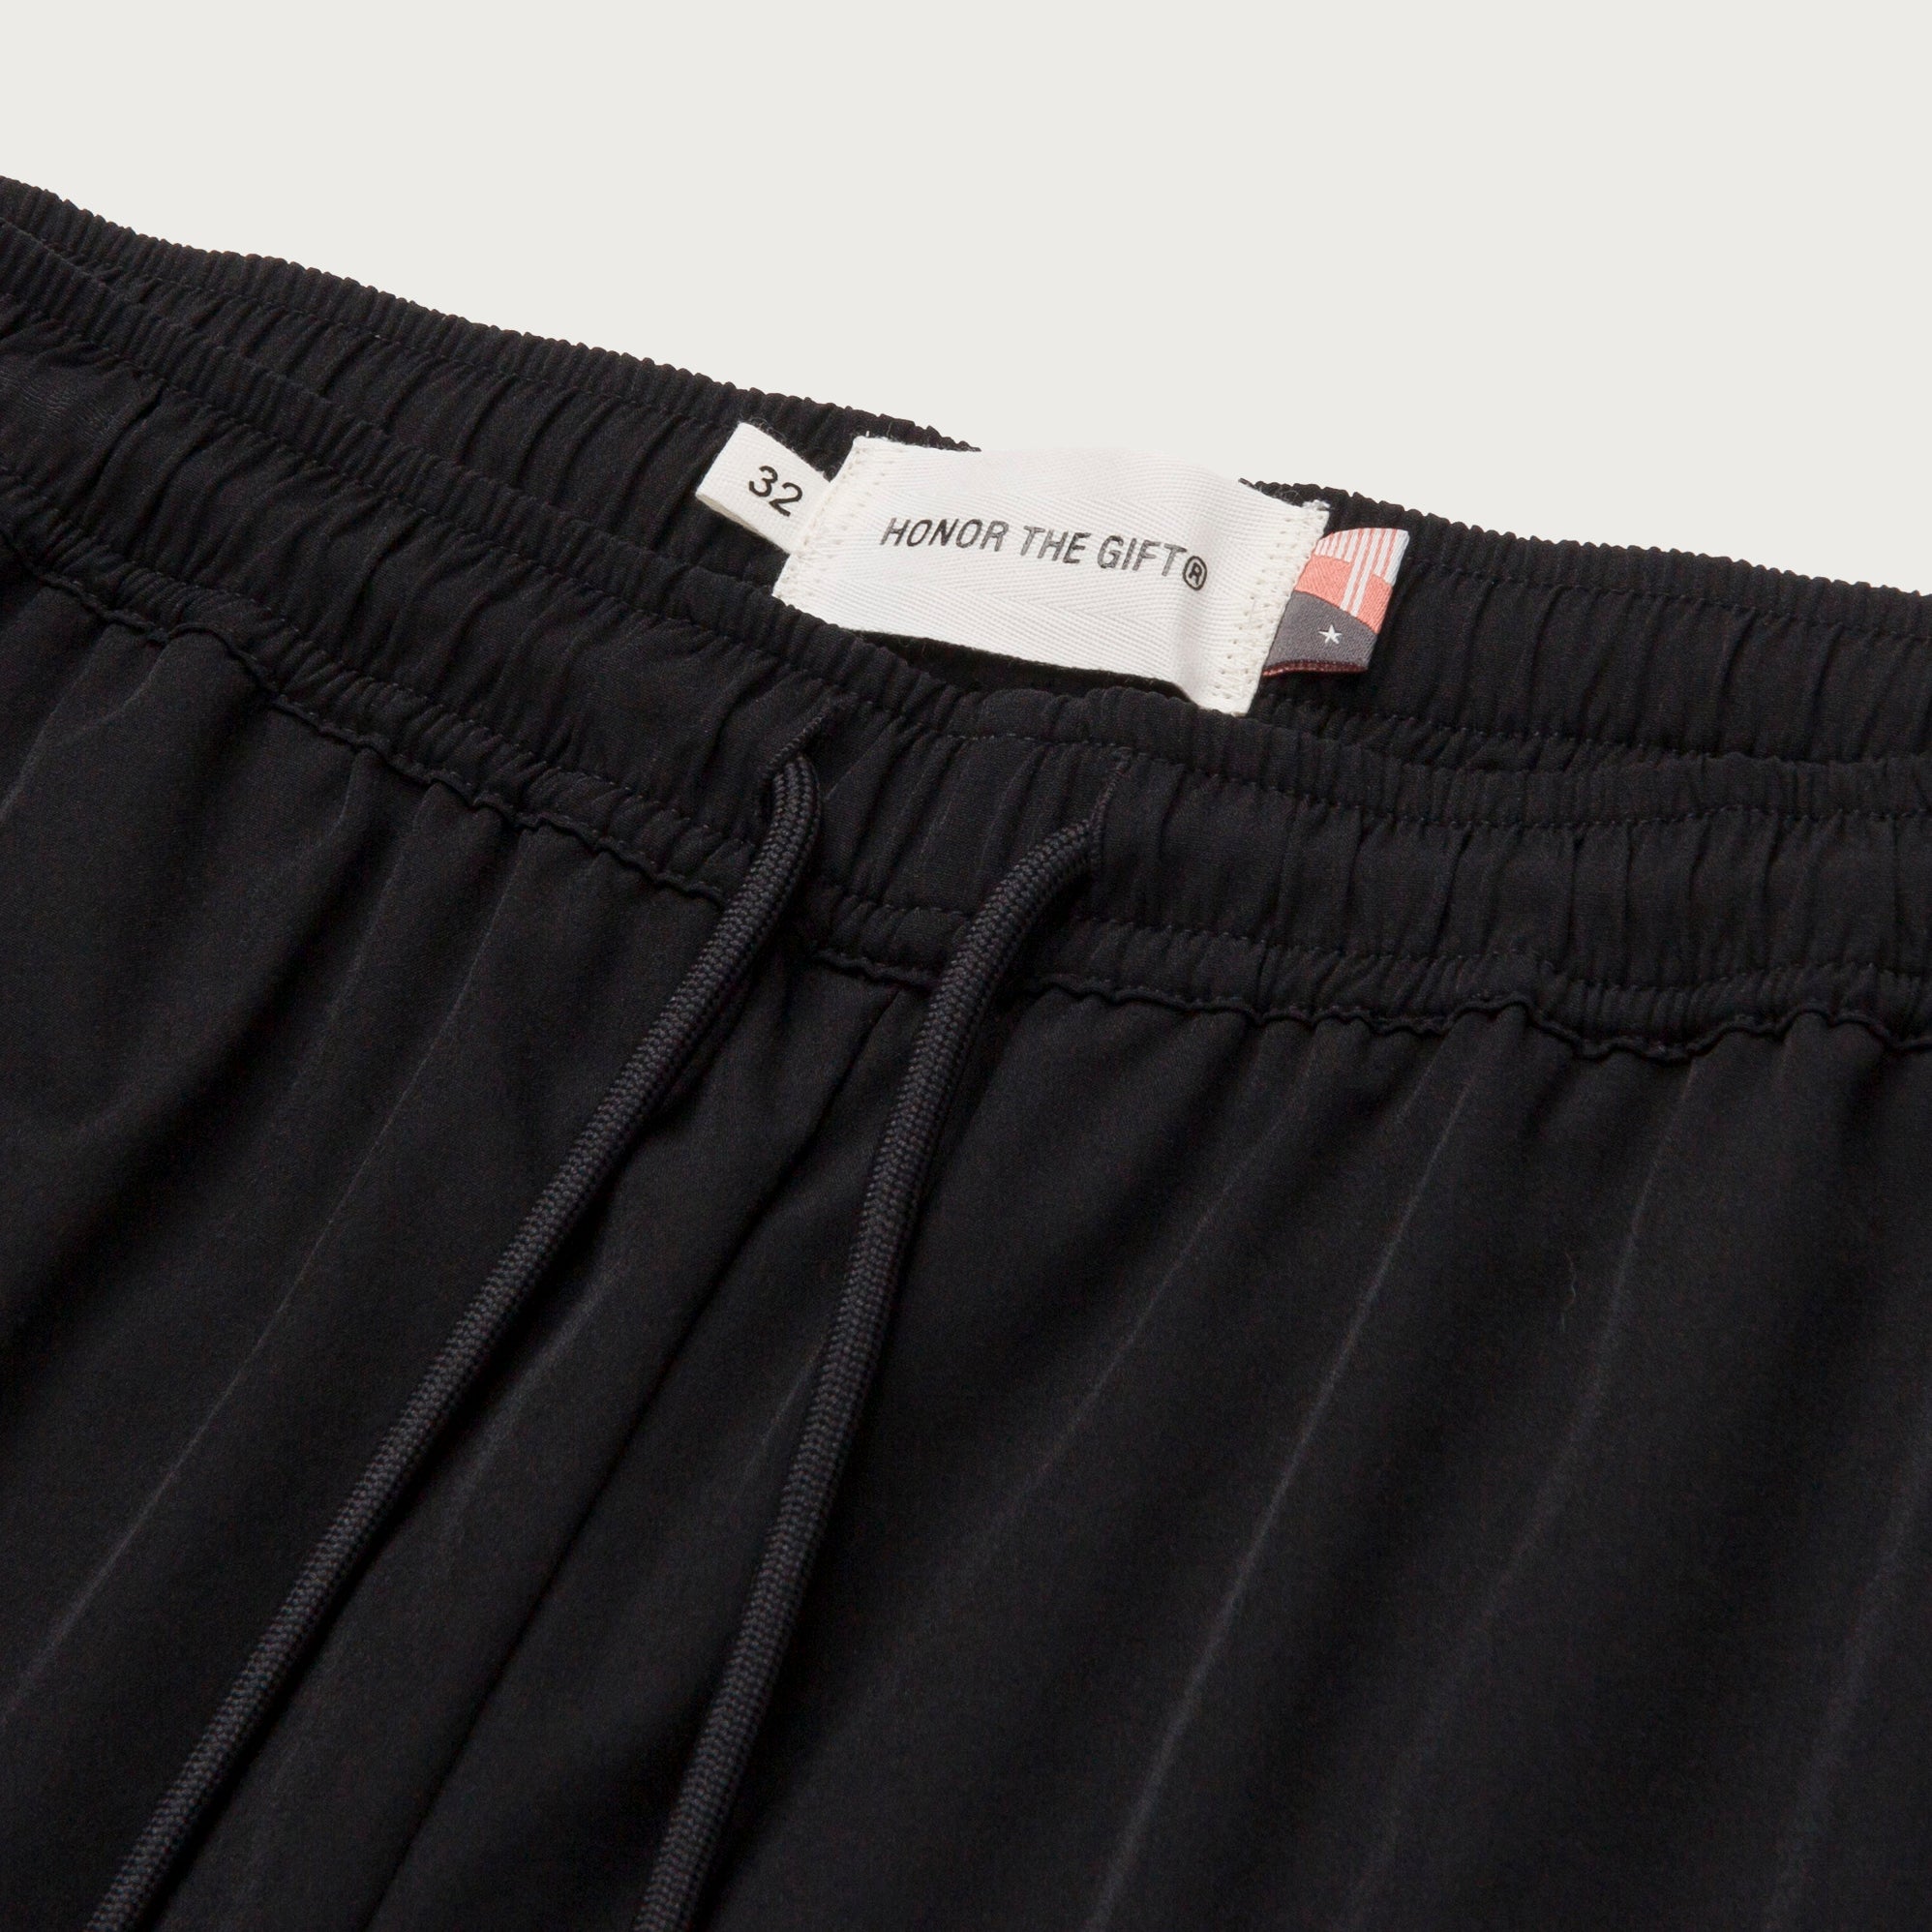 Hybrid Shorts - Black